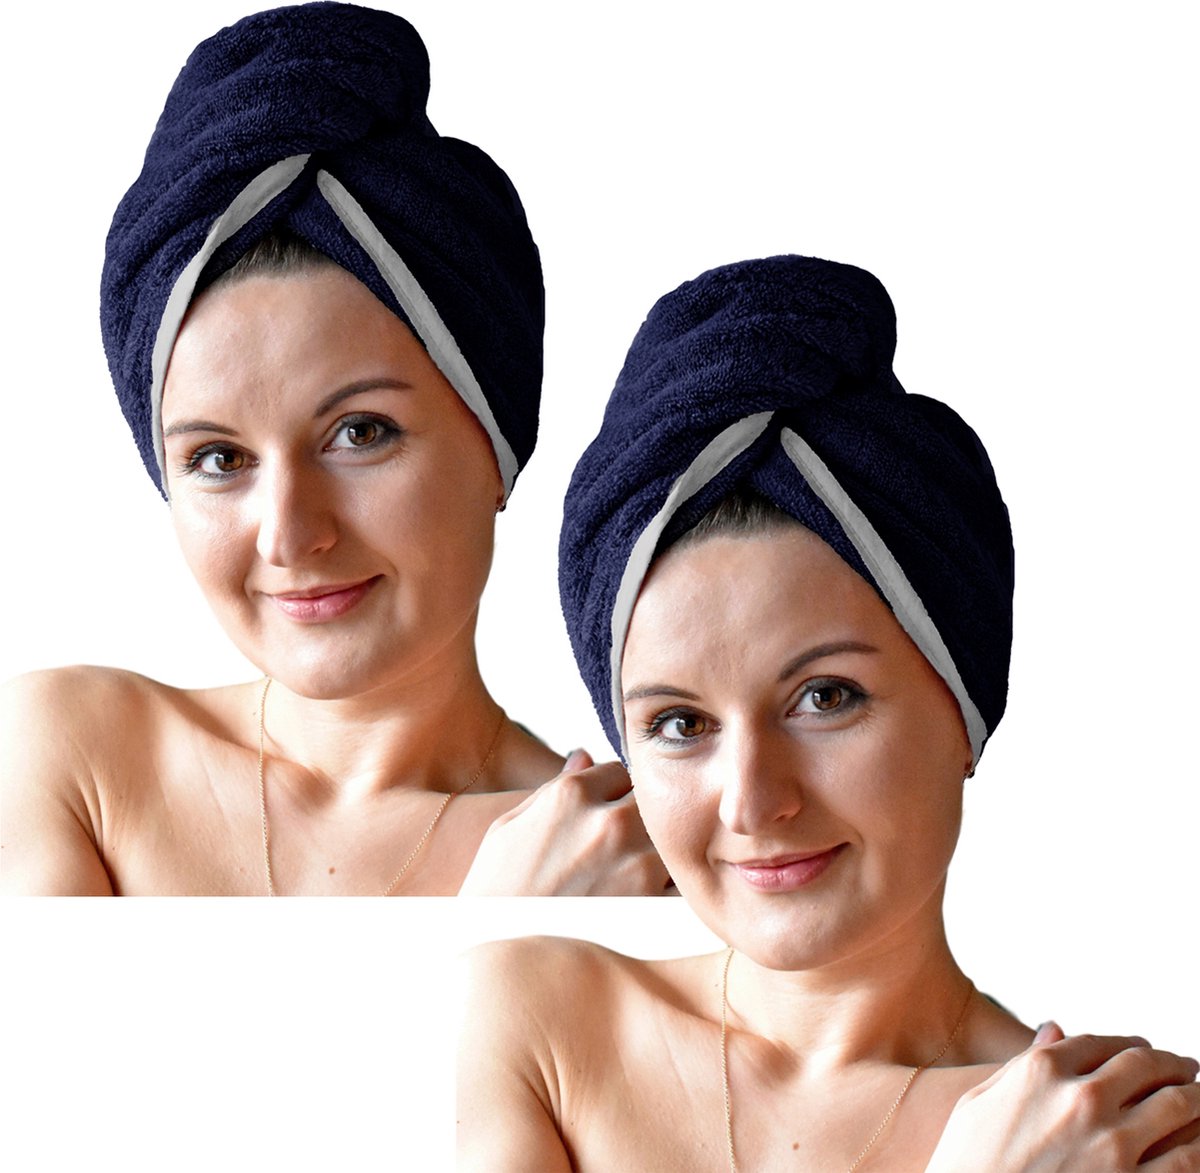 HOMELEVEL Badstof haartulband met knoop voor volwassenen gemaakt van 100% katoen, absorberend, stabiele grip - Aantal 2 - Blauw